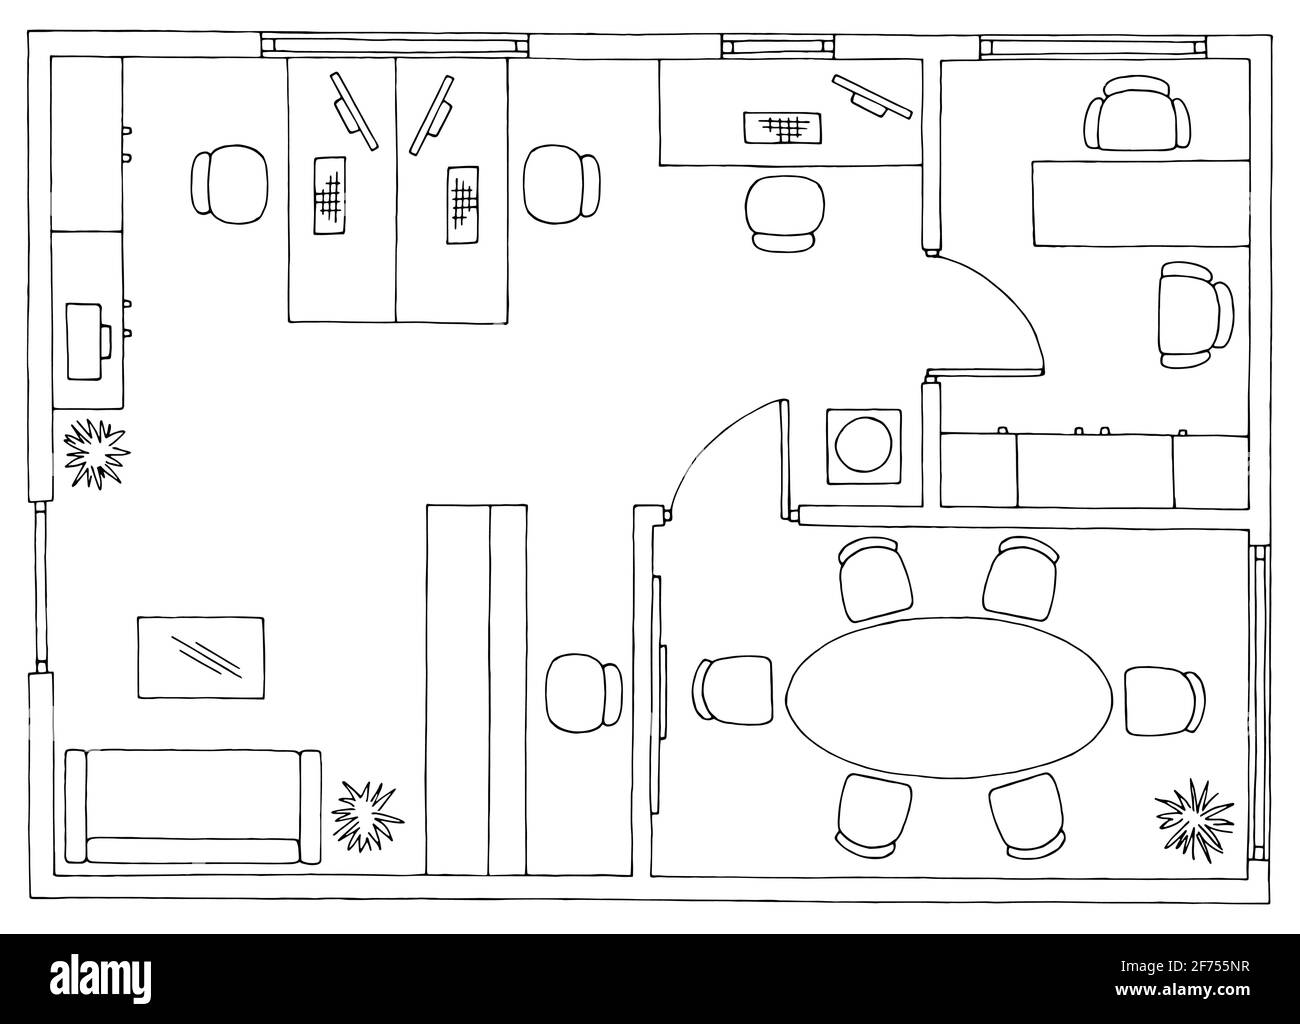 Plan de bureau architecture plancher mobilier intérieur graphique noir blanc croquis vecteur d'illustration Illustration de Vecteur